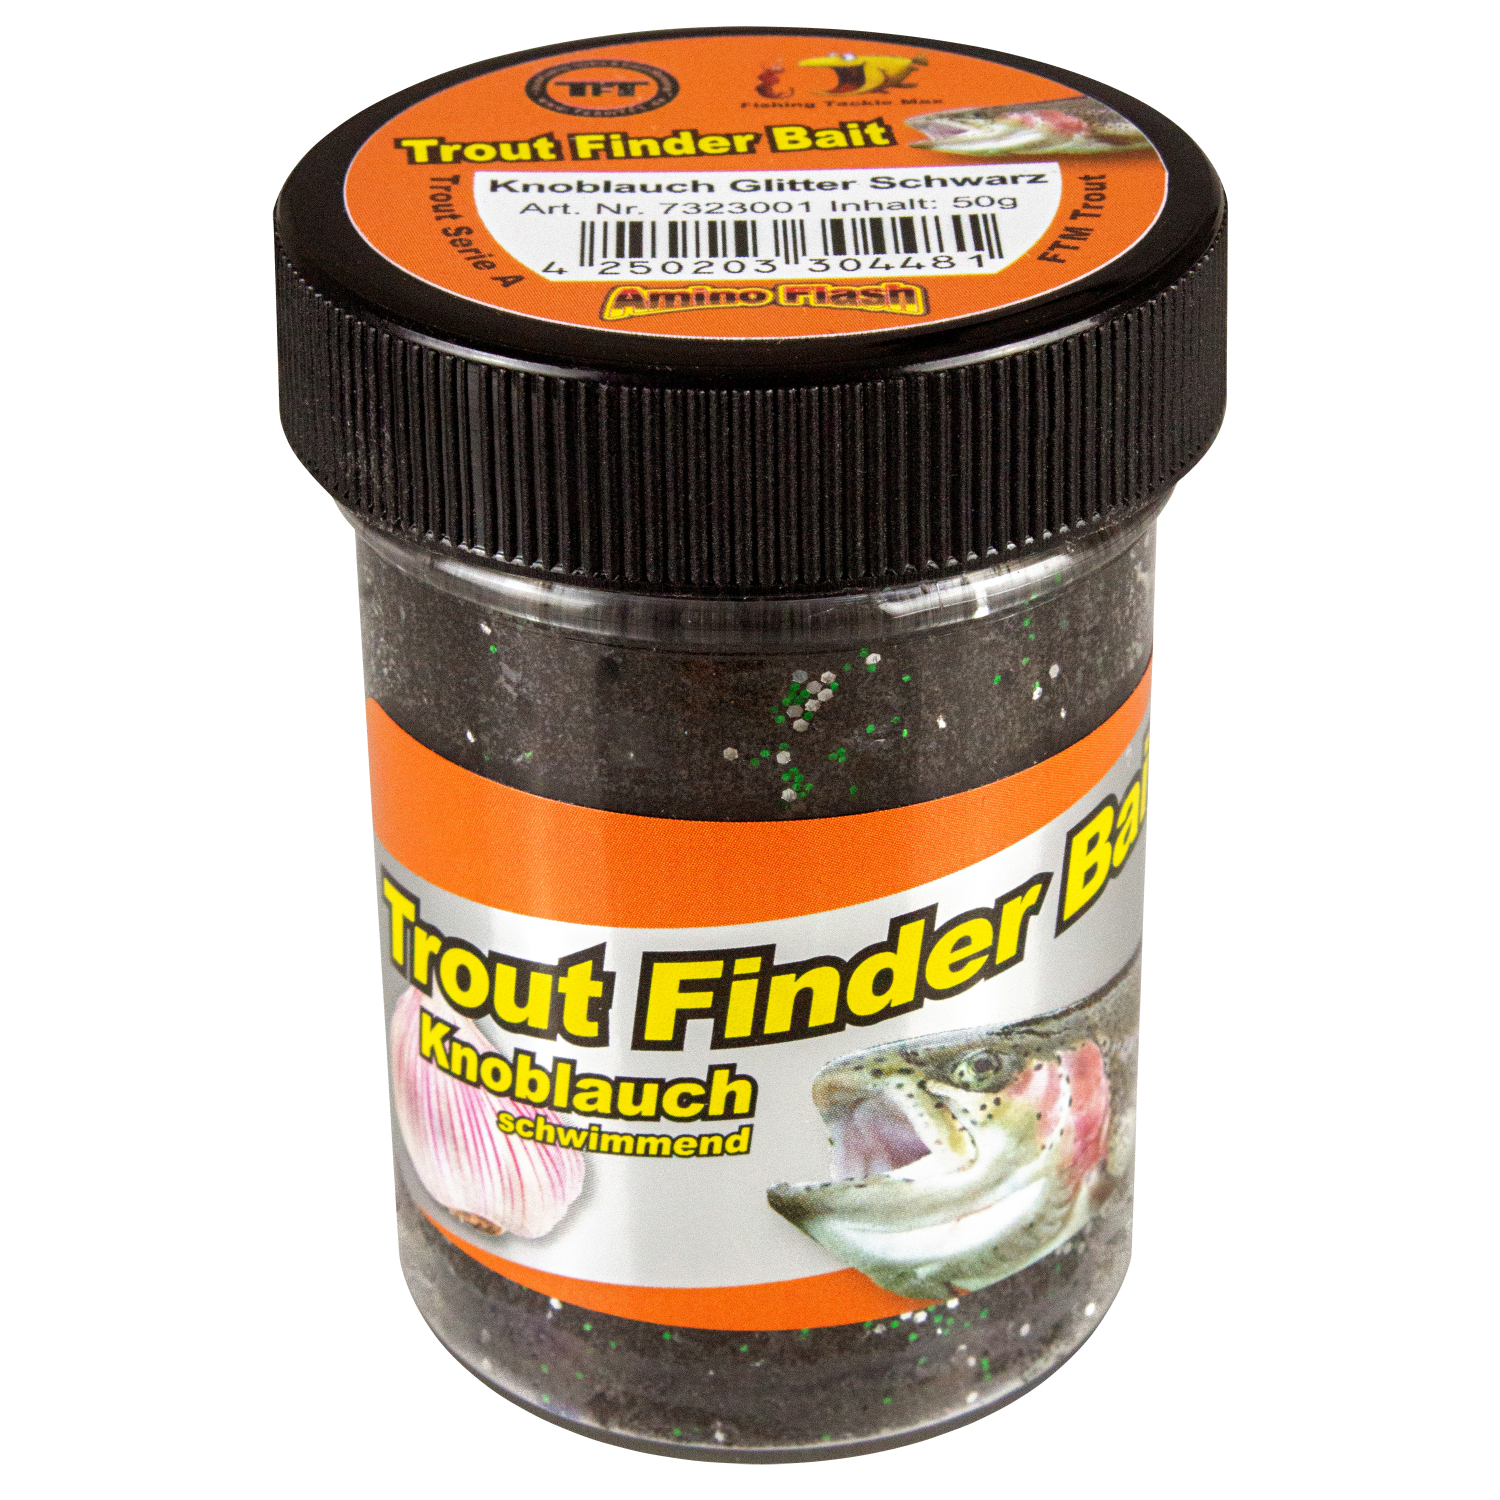 FTM Forellenteig Trout Finder Bait schwimmend (schwarz, Knoblauch) 